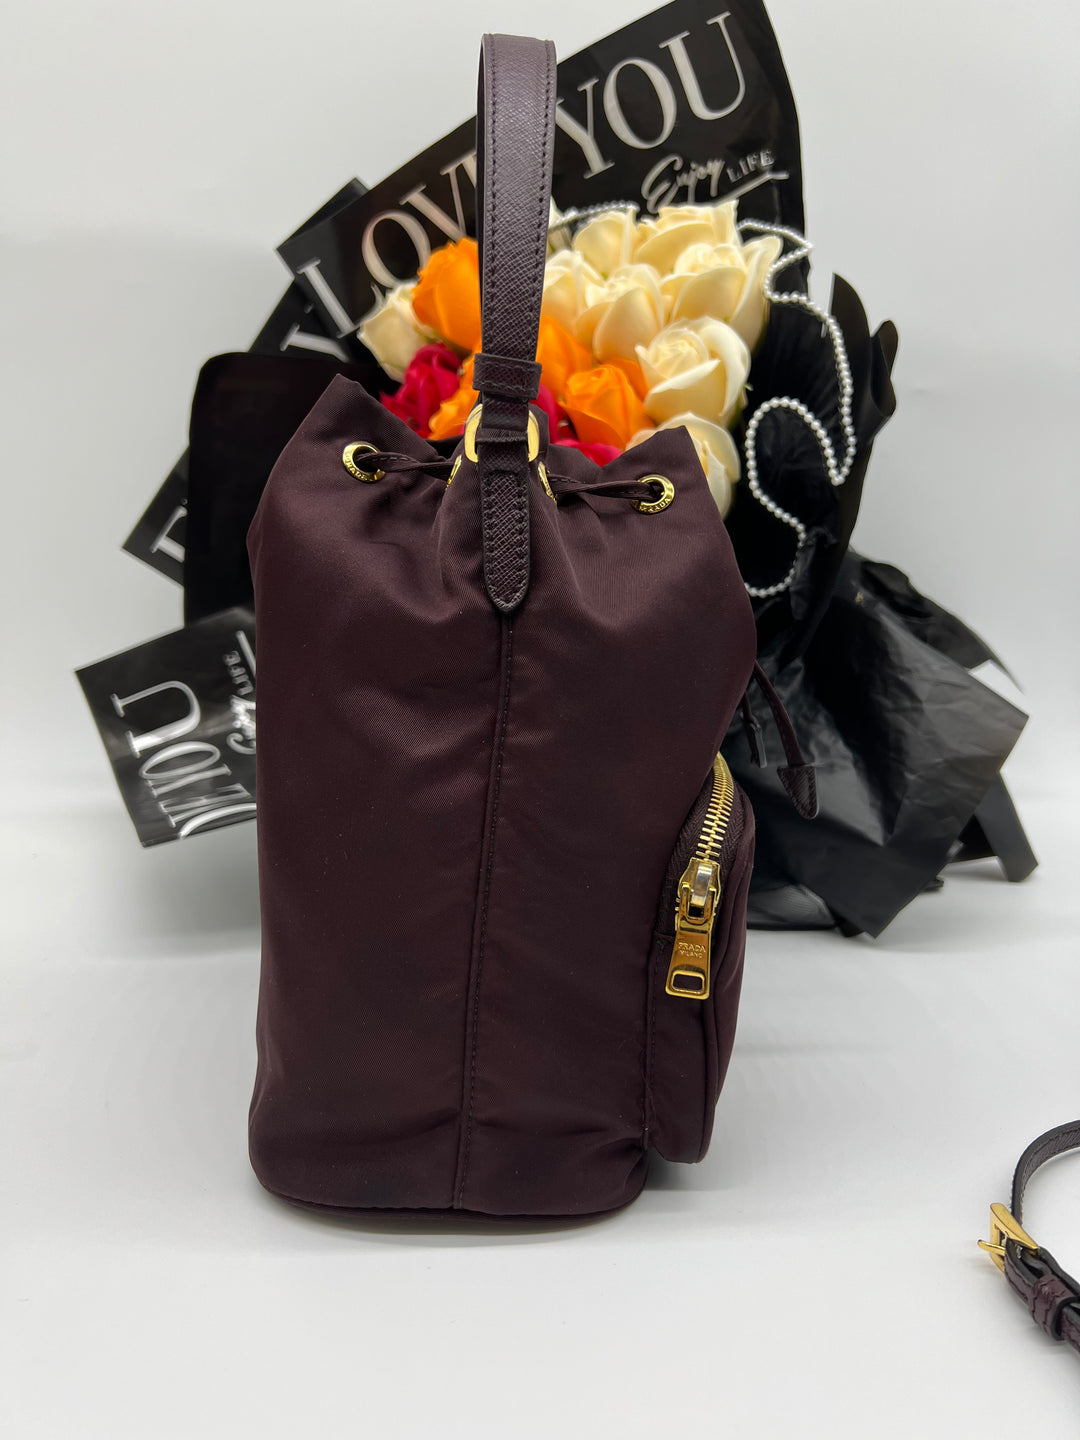 Authentic Nylon Prada Duet Bag